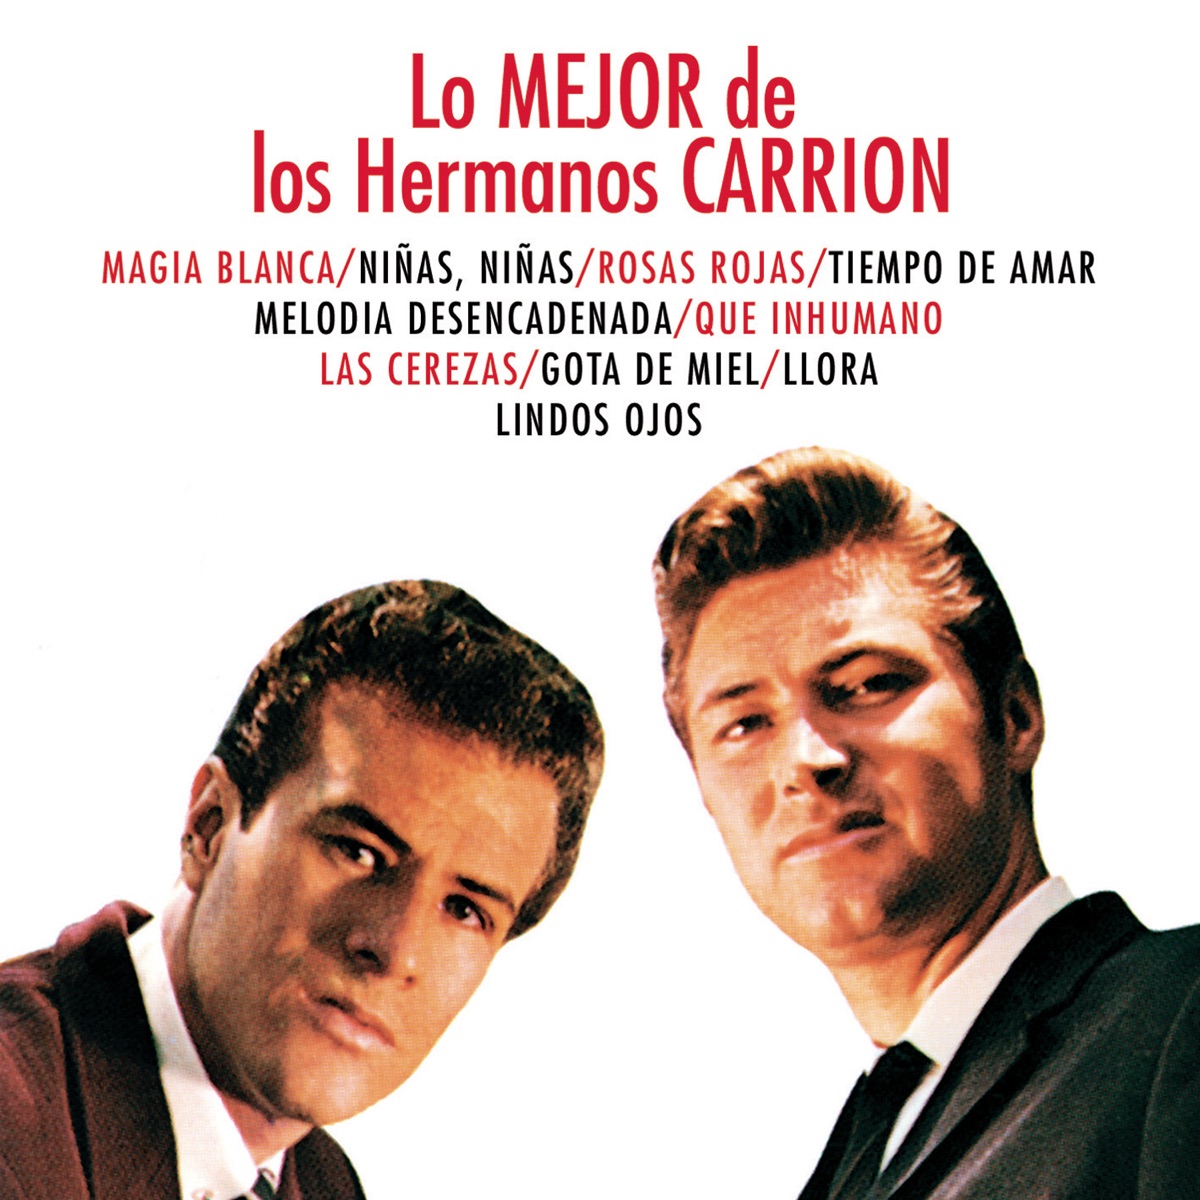 Lo Mejor de los Hermanos - Album by Hermanos Carrión - Apple Music